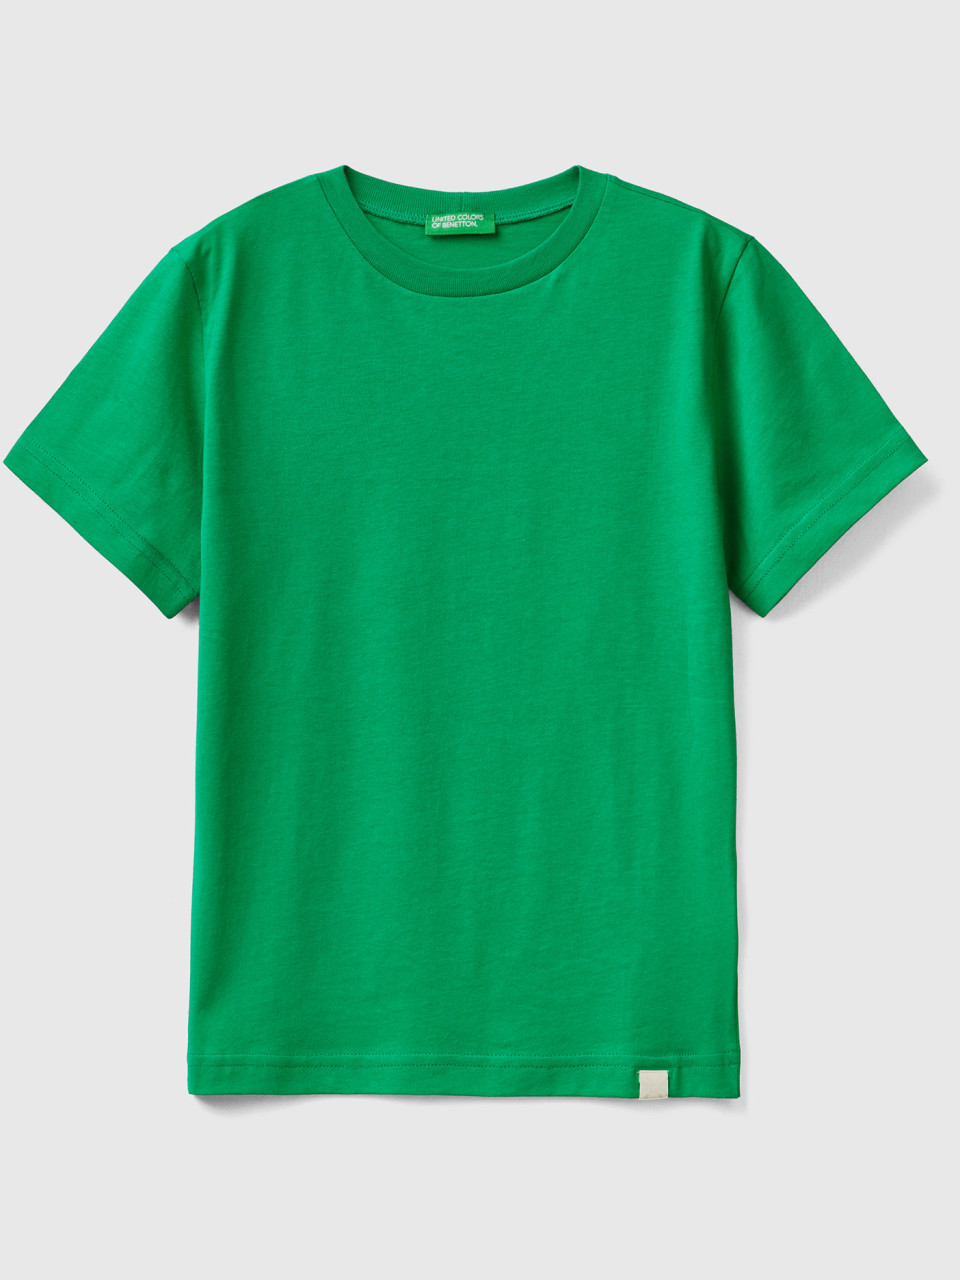 Benetton, Organic Cotton T-shirt, Green, Kids